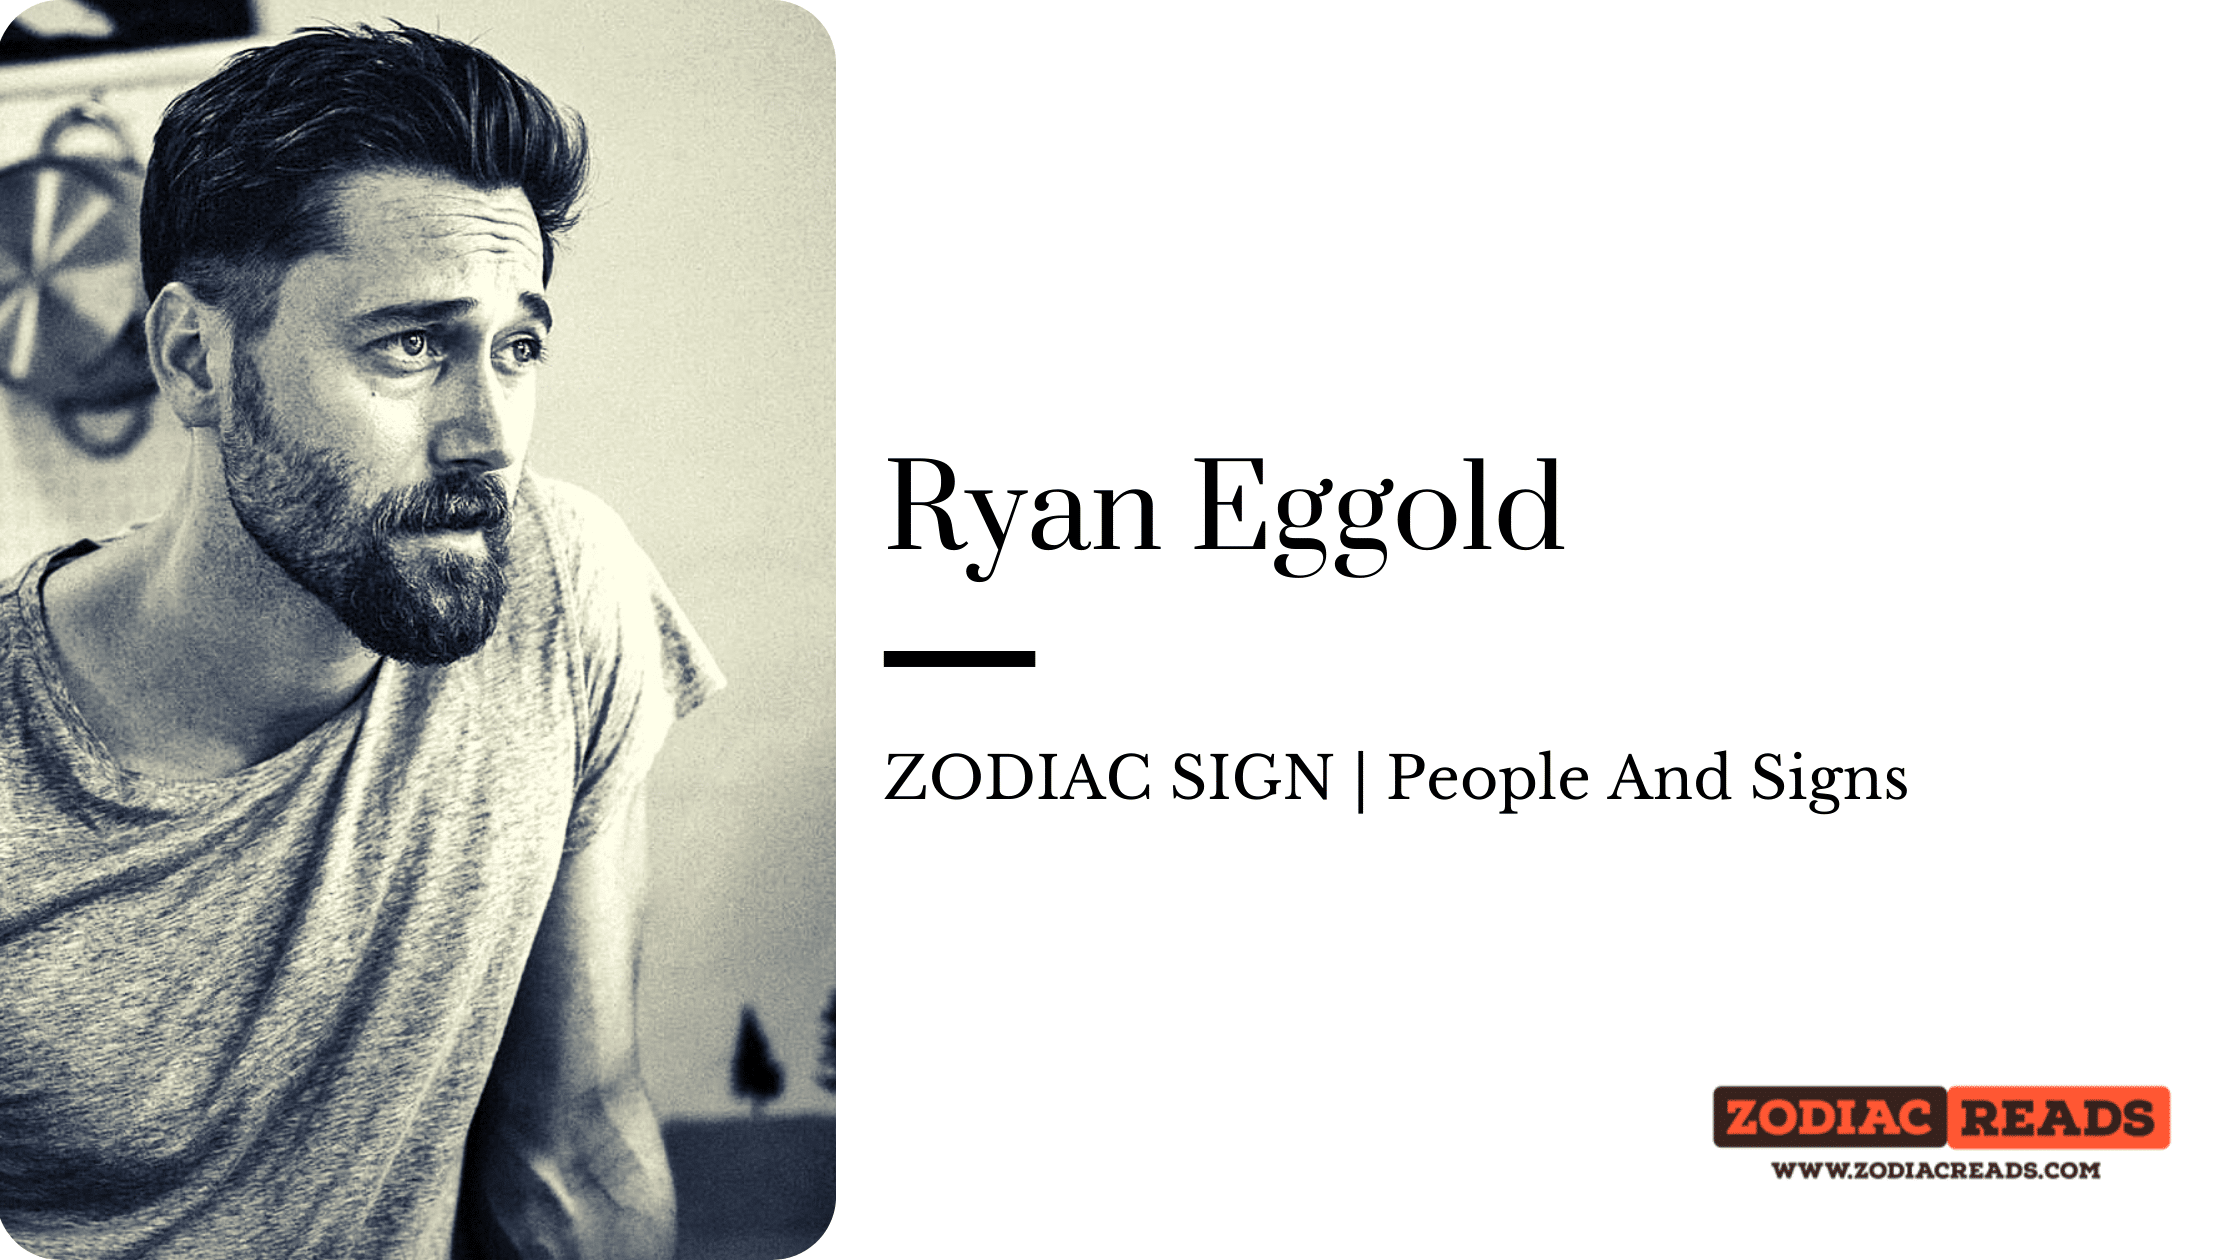 Ryan Eggold zodiac